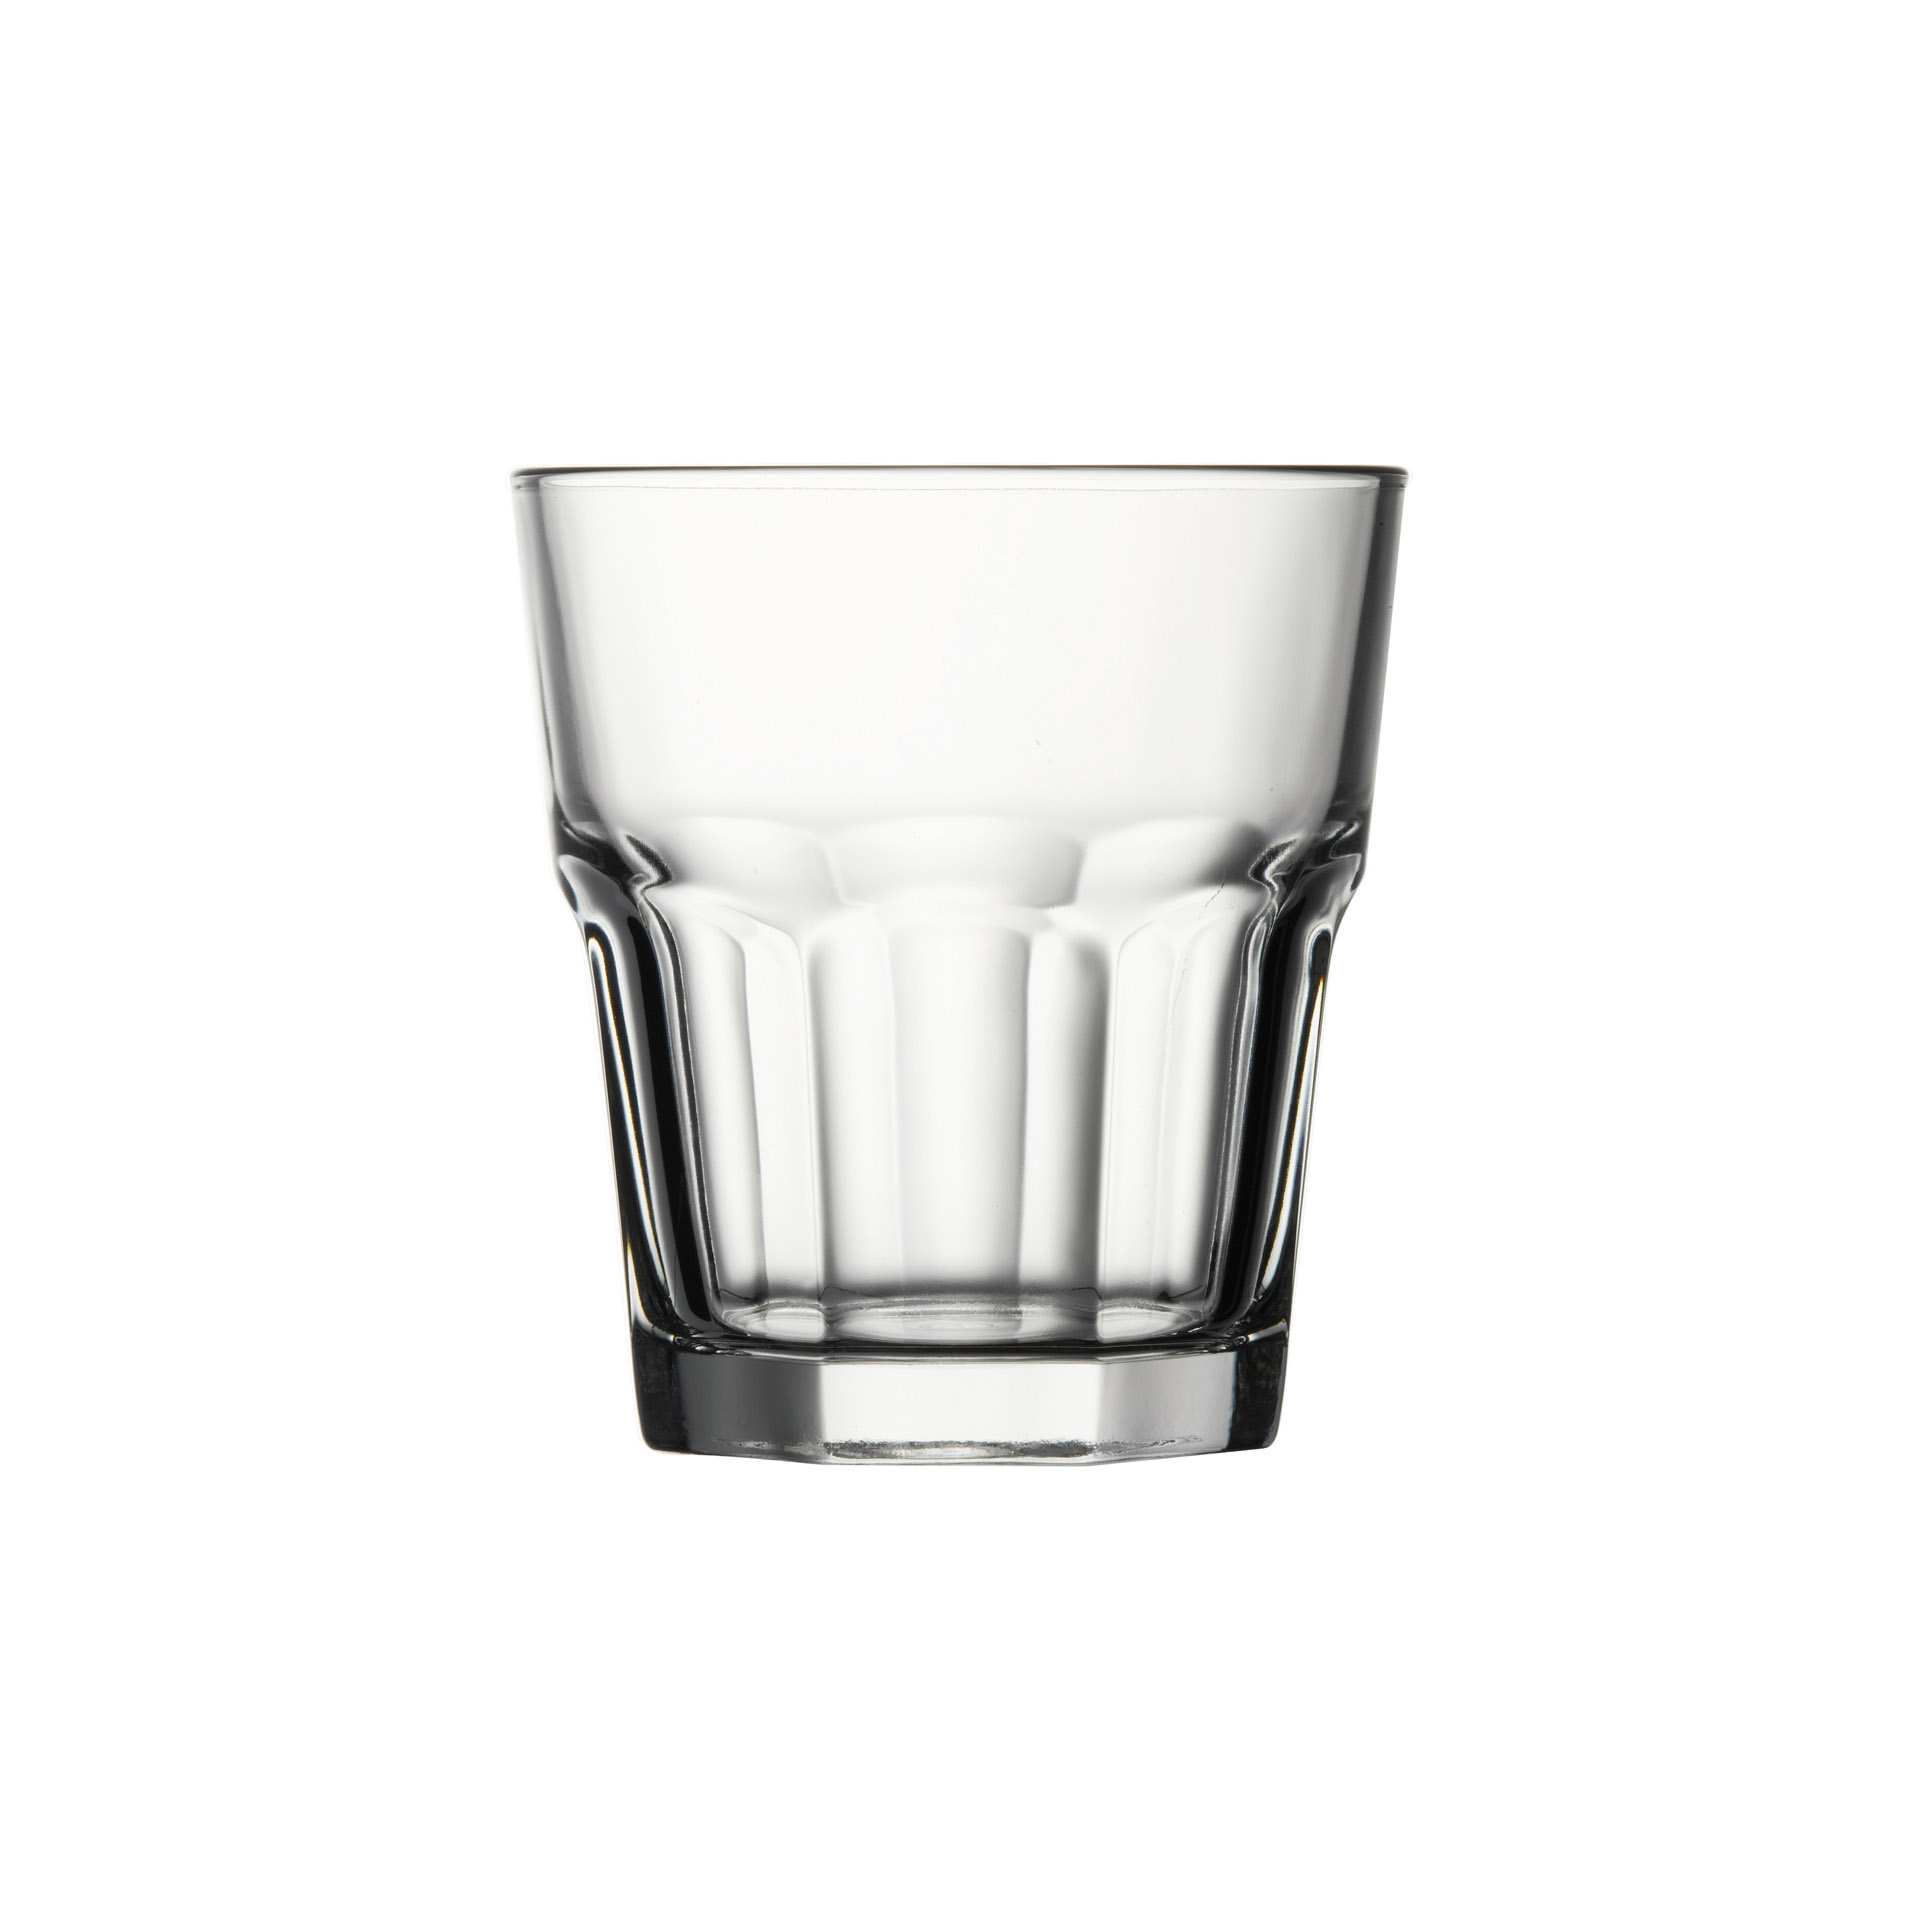 Whiskey-Glas - Set á 12 Stück - Serie Casablanca - Höhe 10,0 cm - Ø oben / unten 9,2 / 6,4 cm - Inhalt 0,355 l - Glas - 52704-A